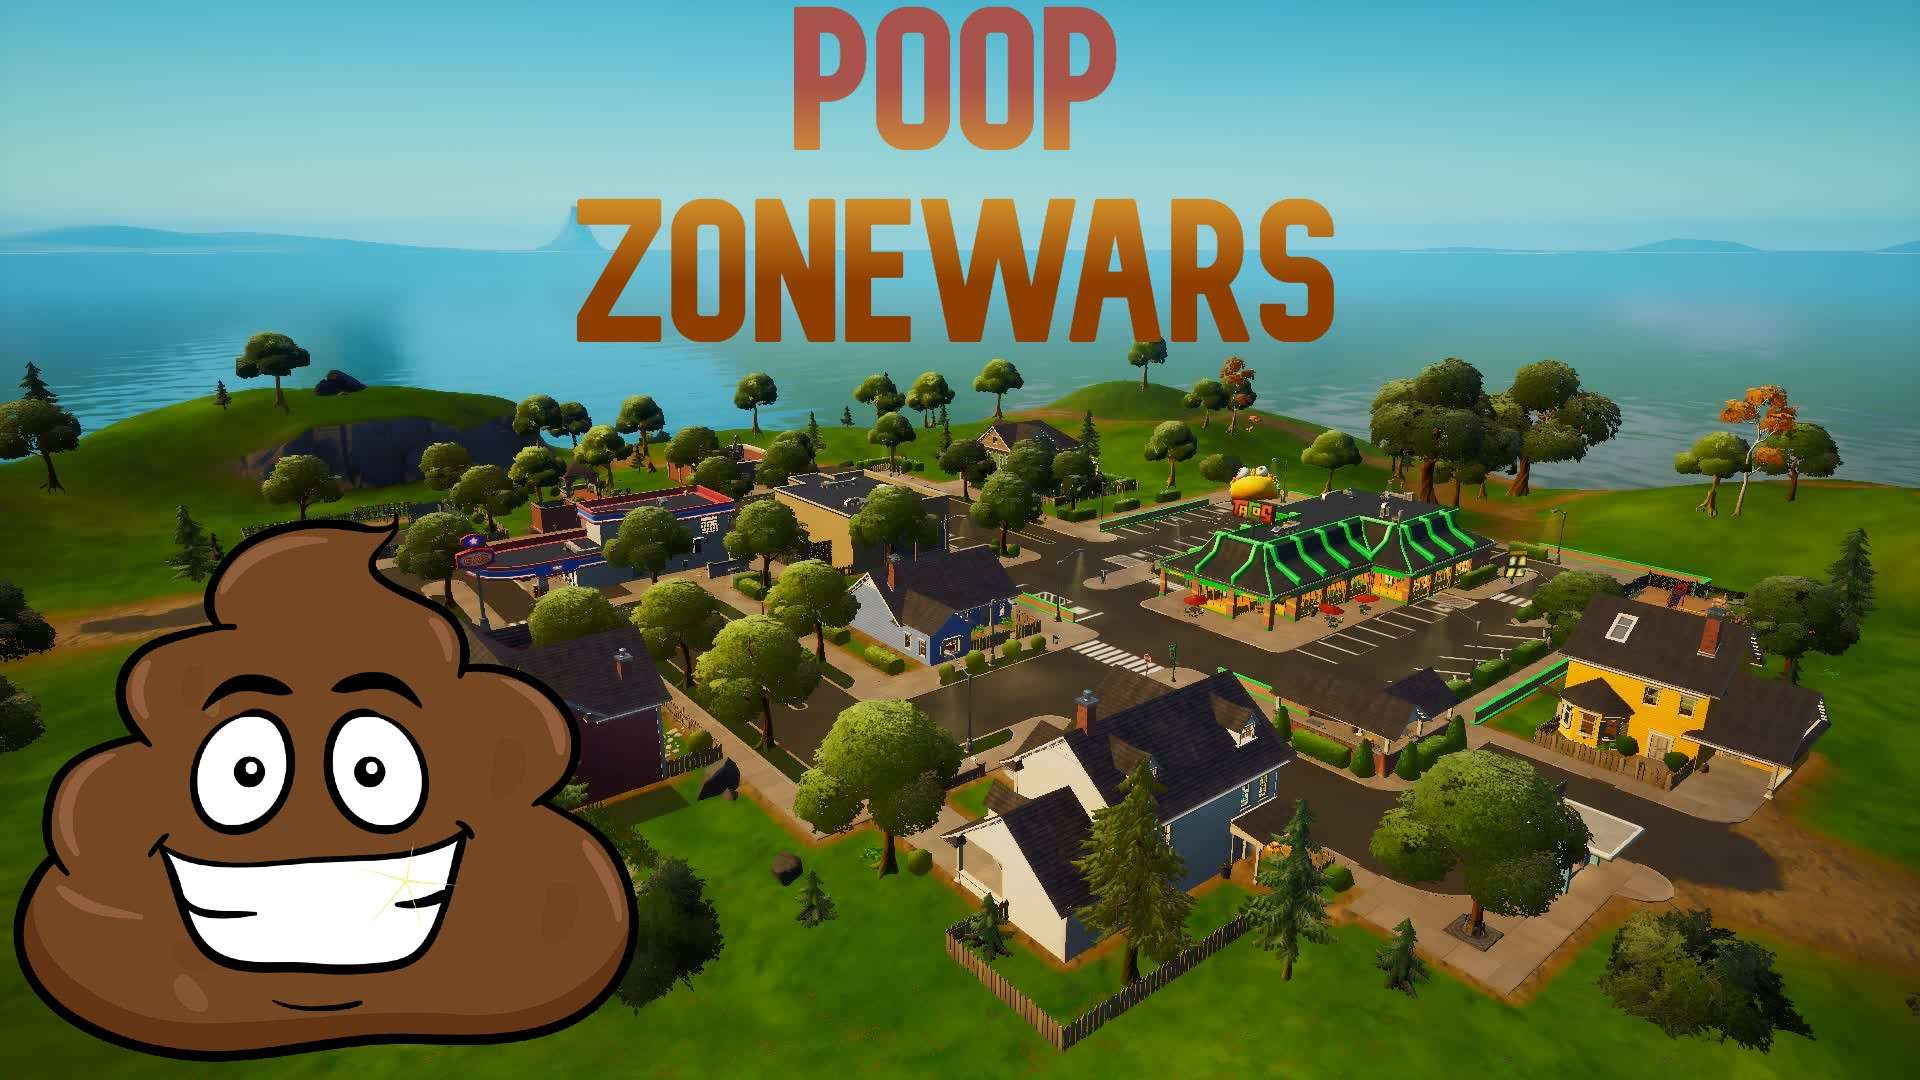 poop zonewars